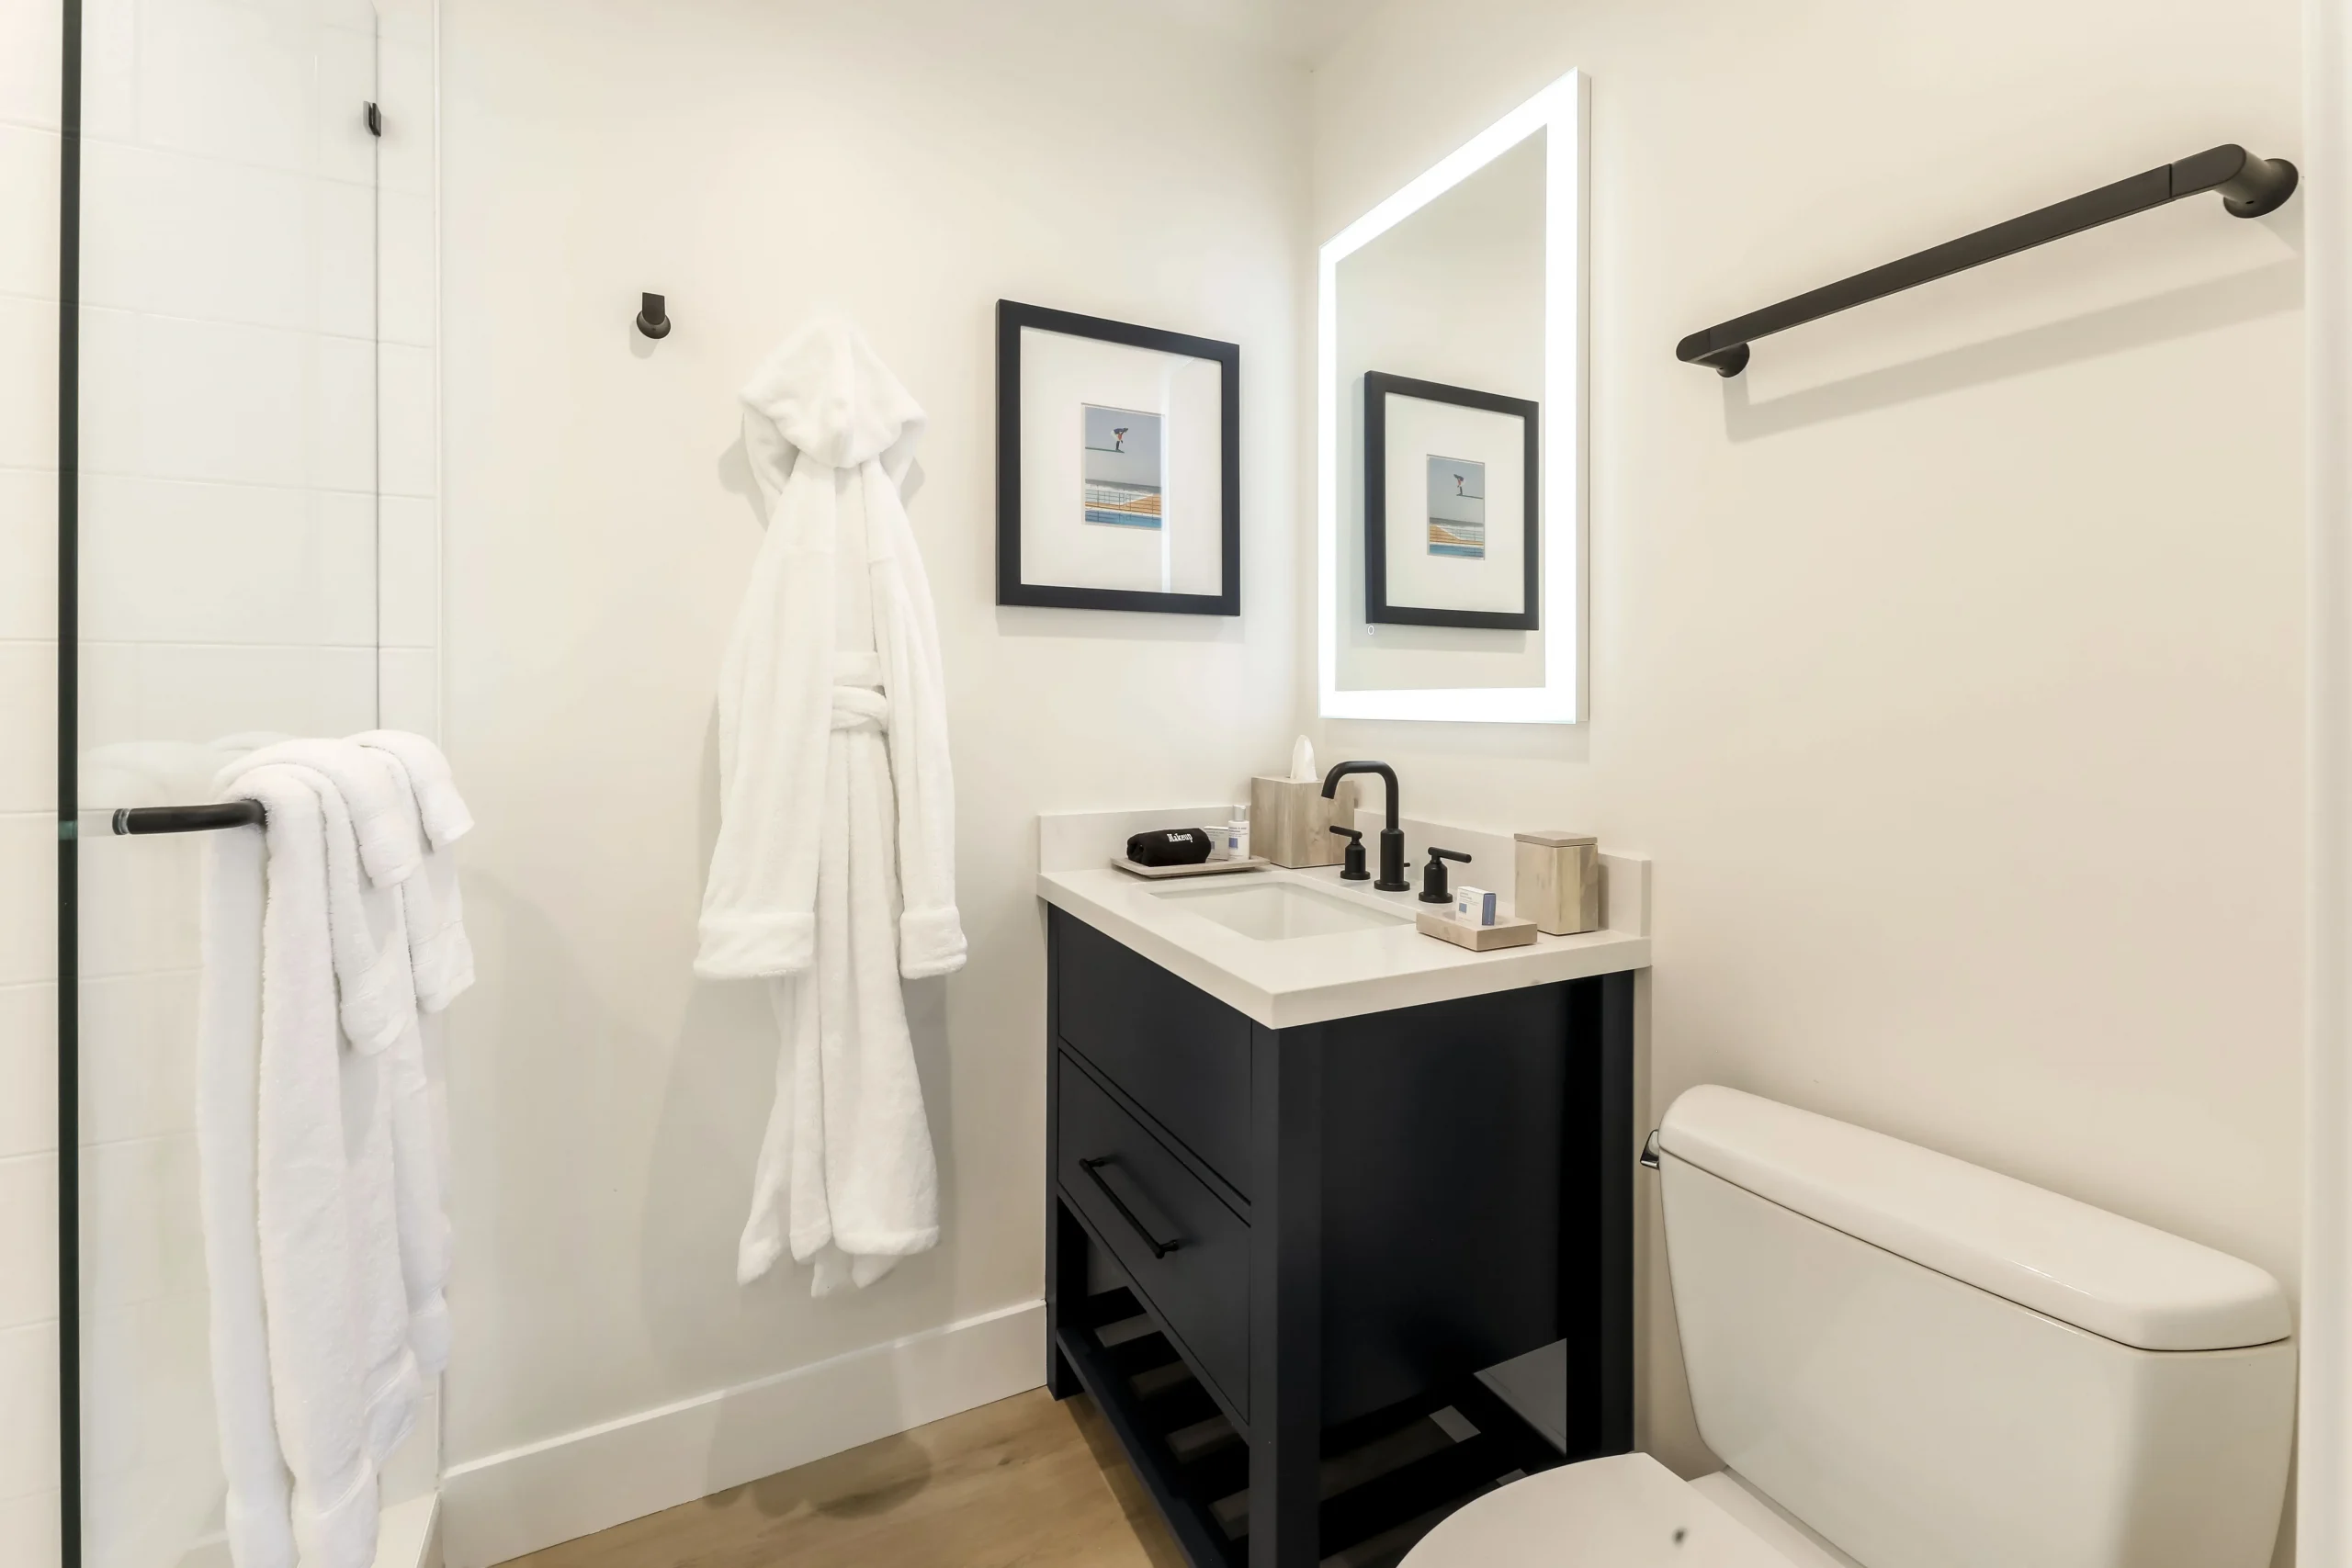 Del Mar guestroom bathroom amenities